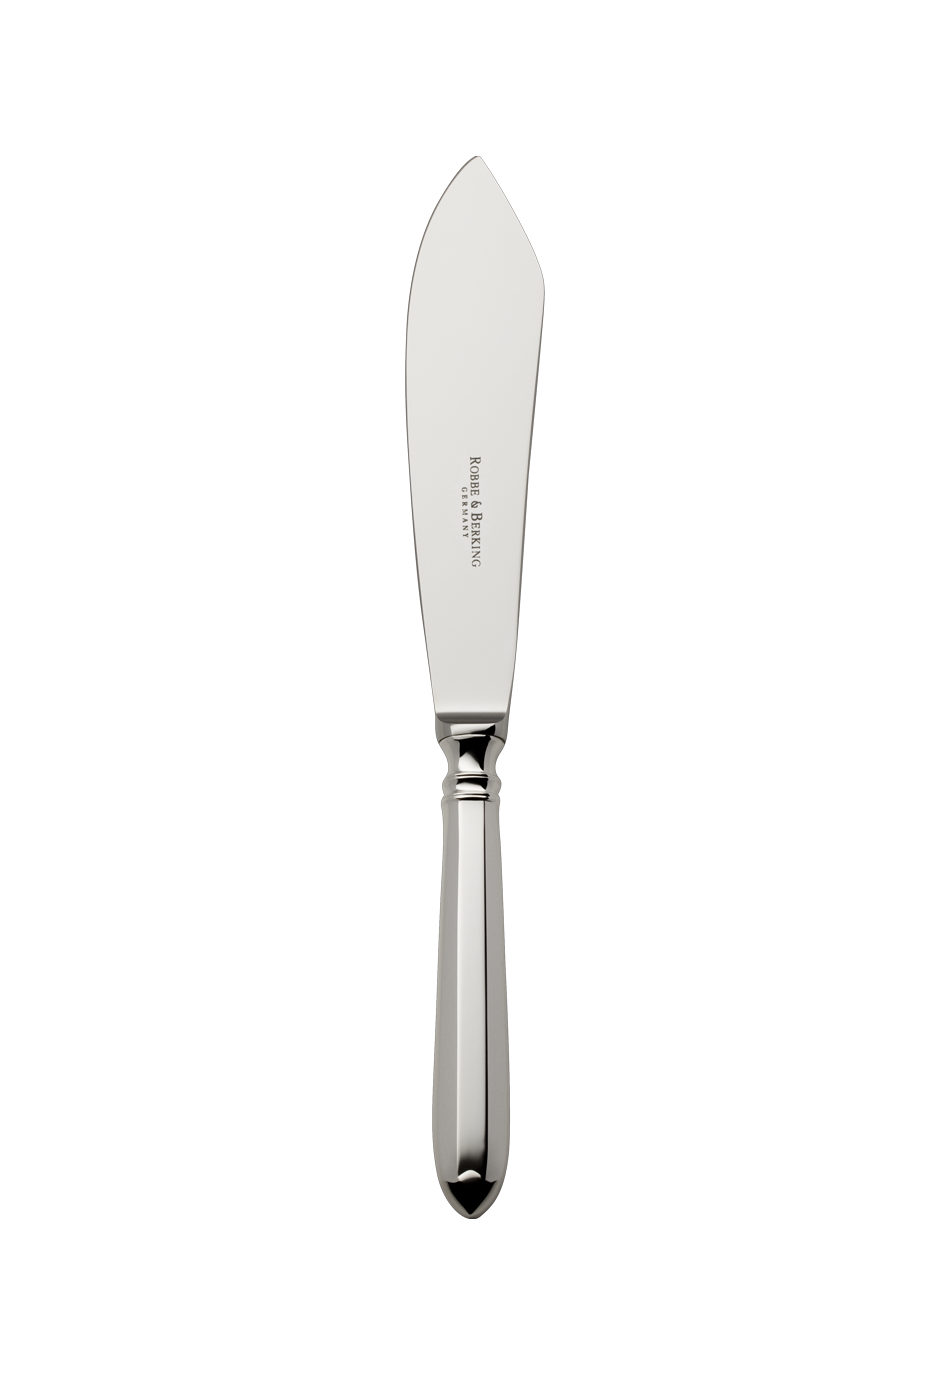 Navette Tart Knife (150g massive silverplated)